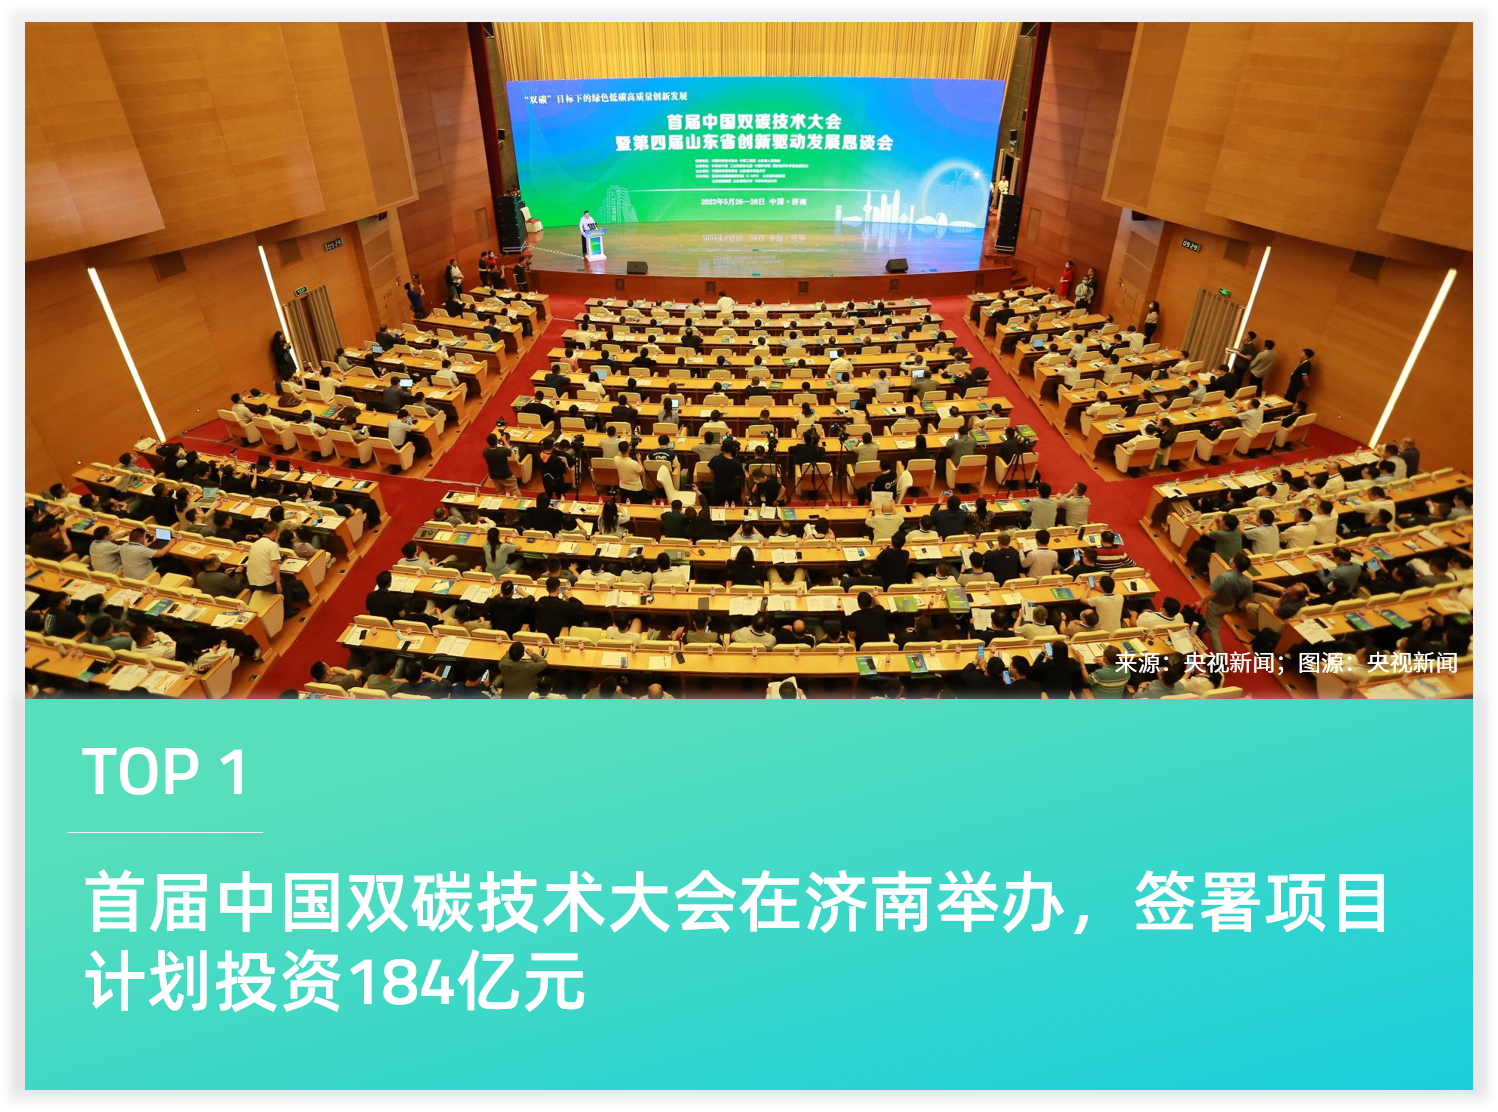 首届中国双碳技术大会在济南举办，签署项目计划投资184亿元